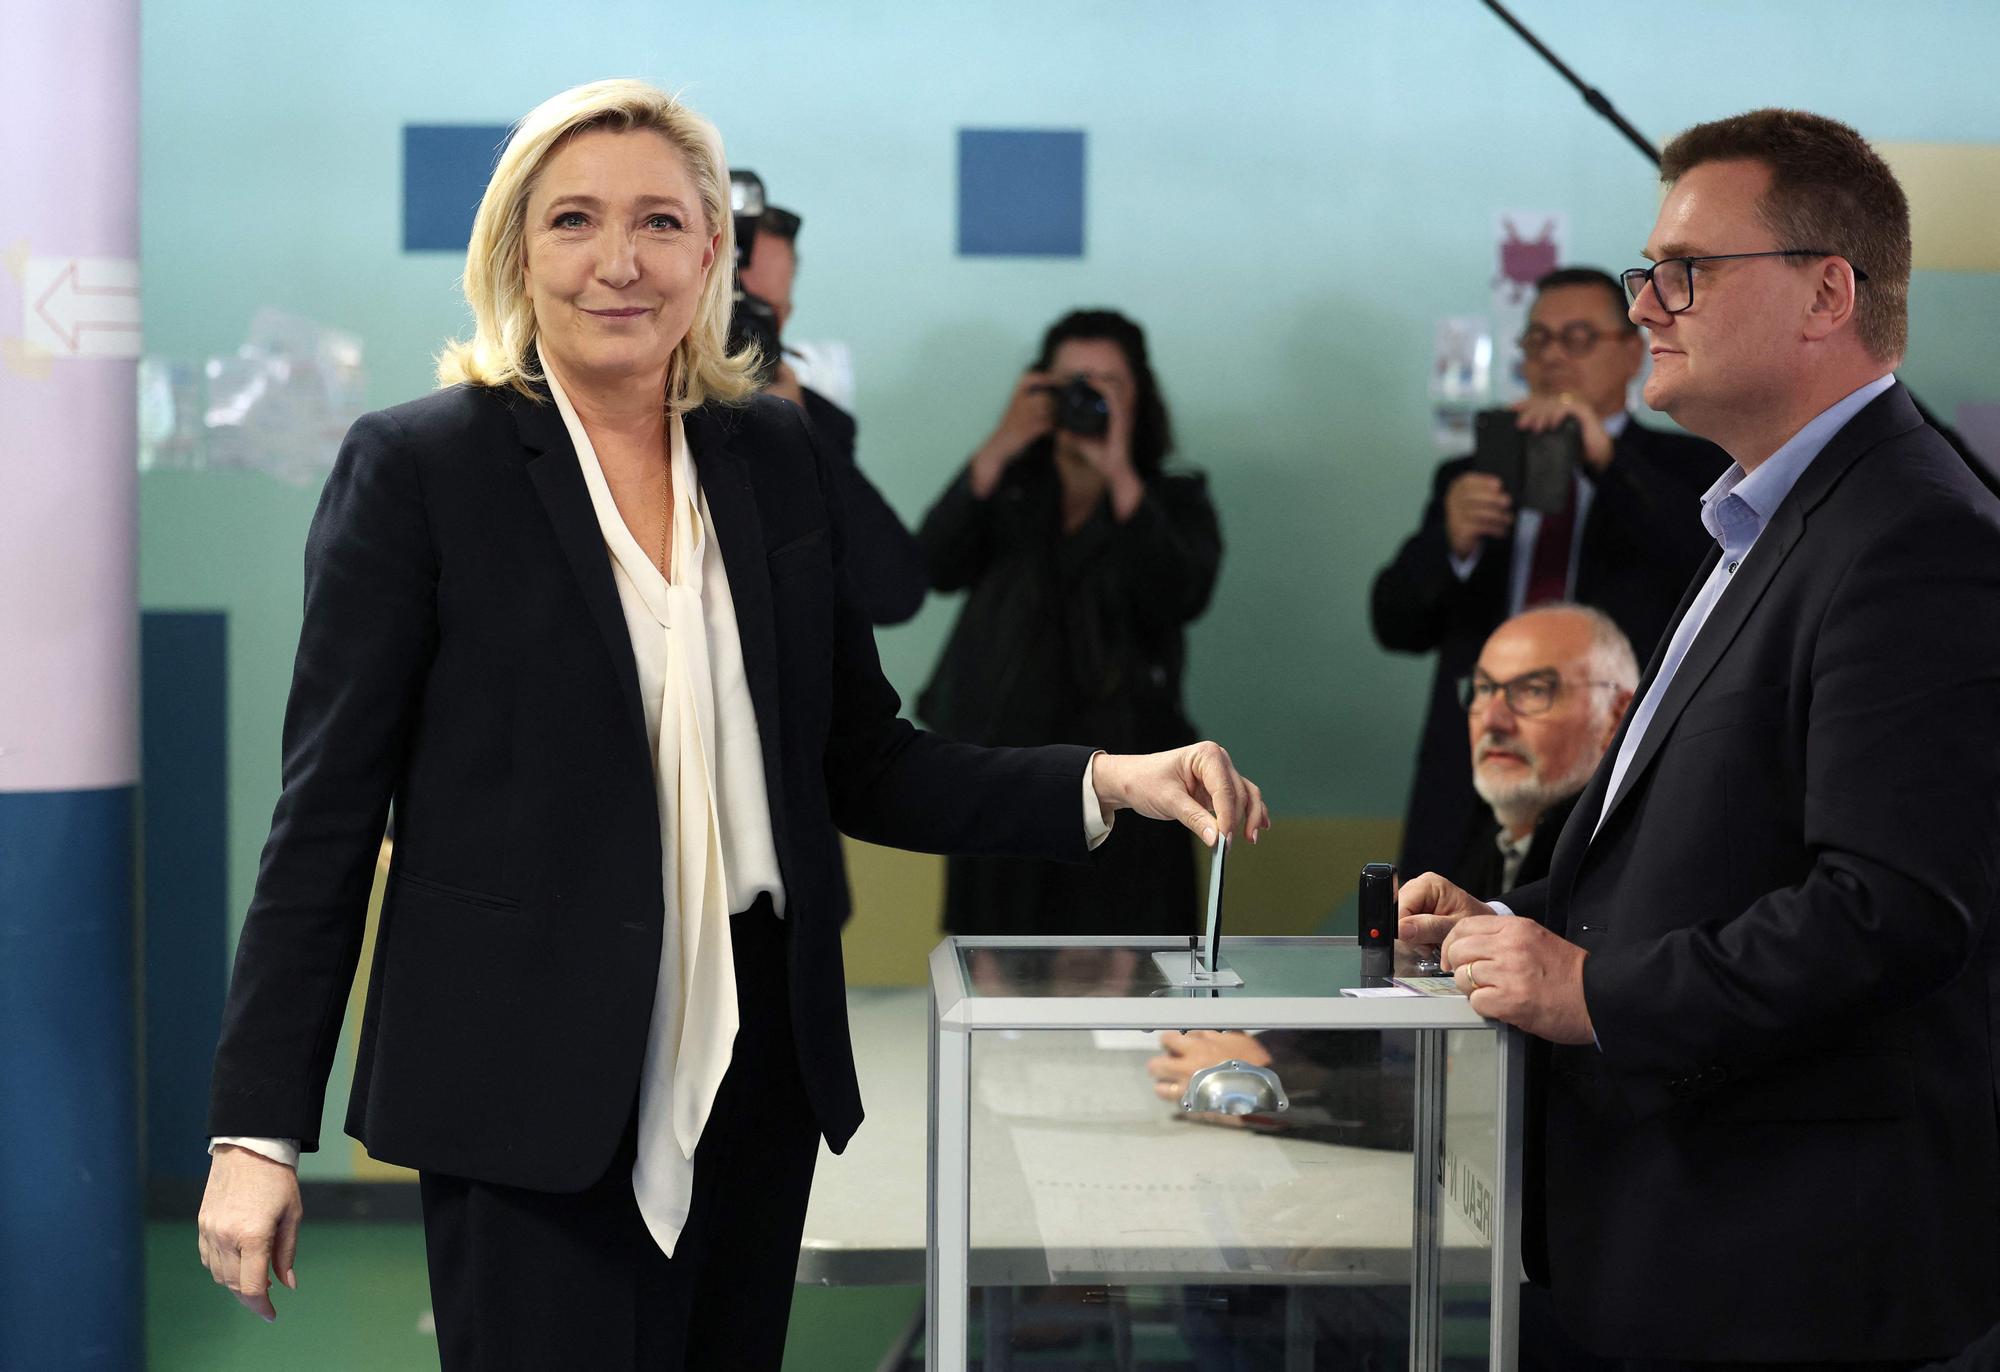 La jornada electoral en Francia, en imágenes